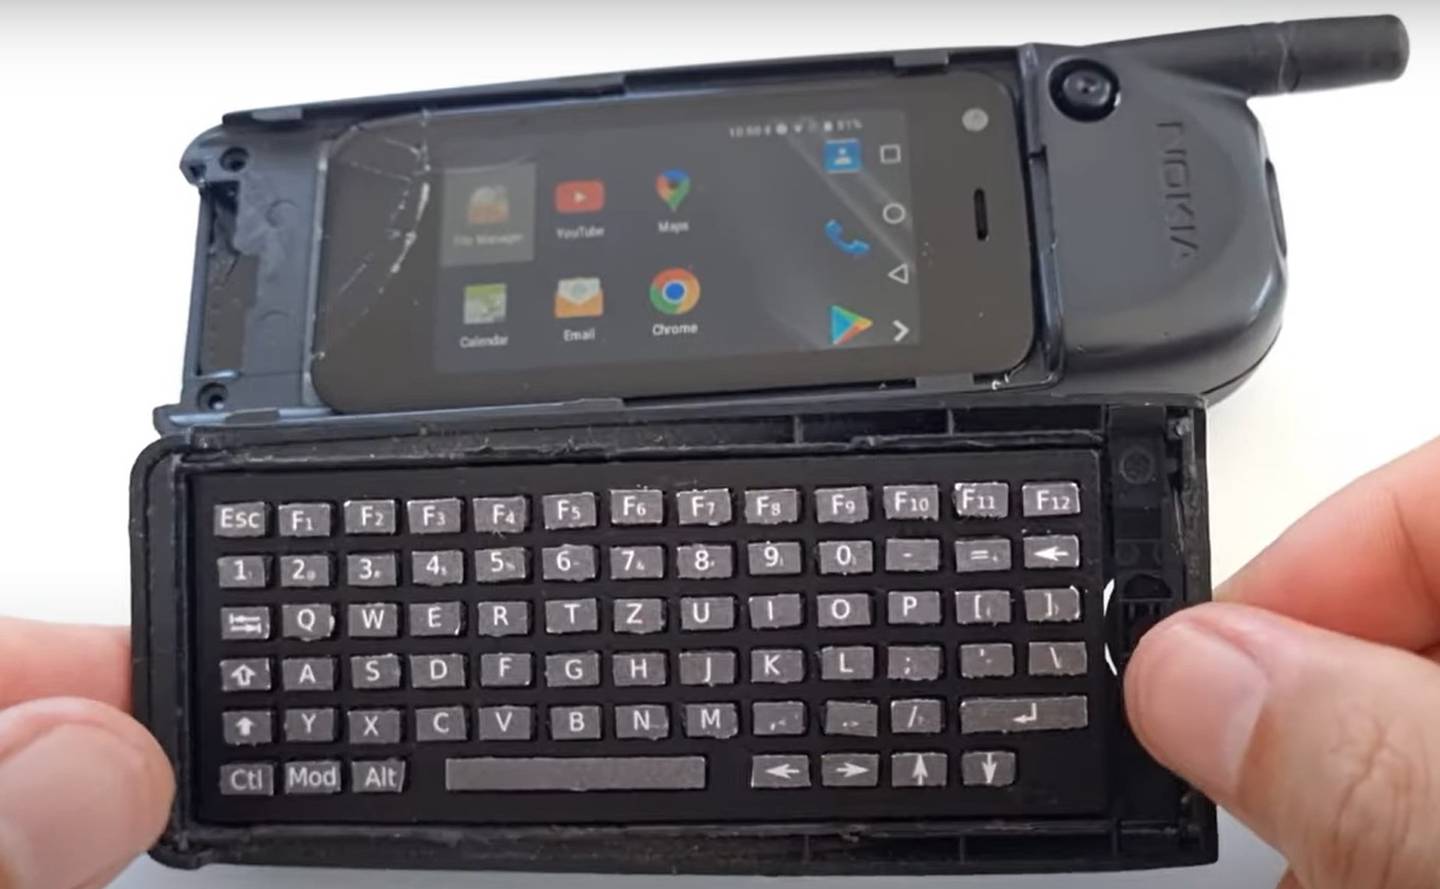 Así se ve el Nokia 5110 convertido en un smartphone Android.